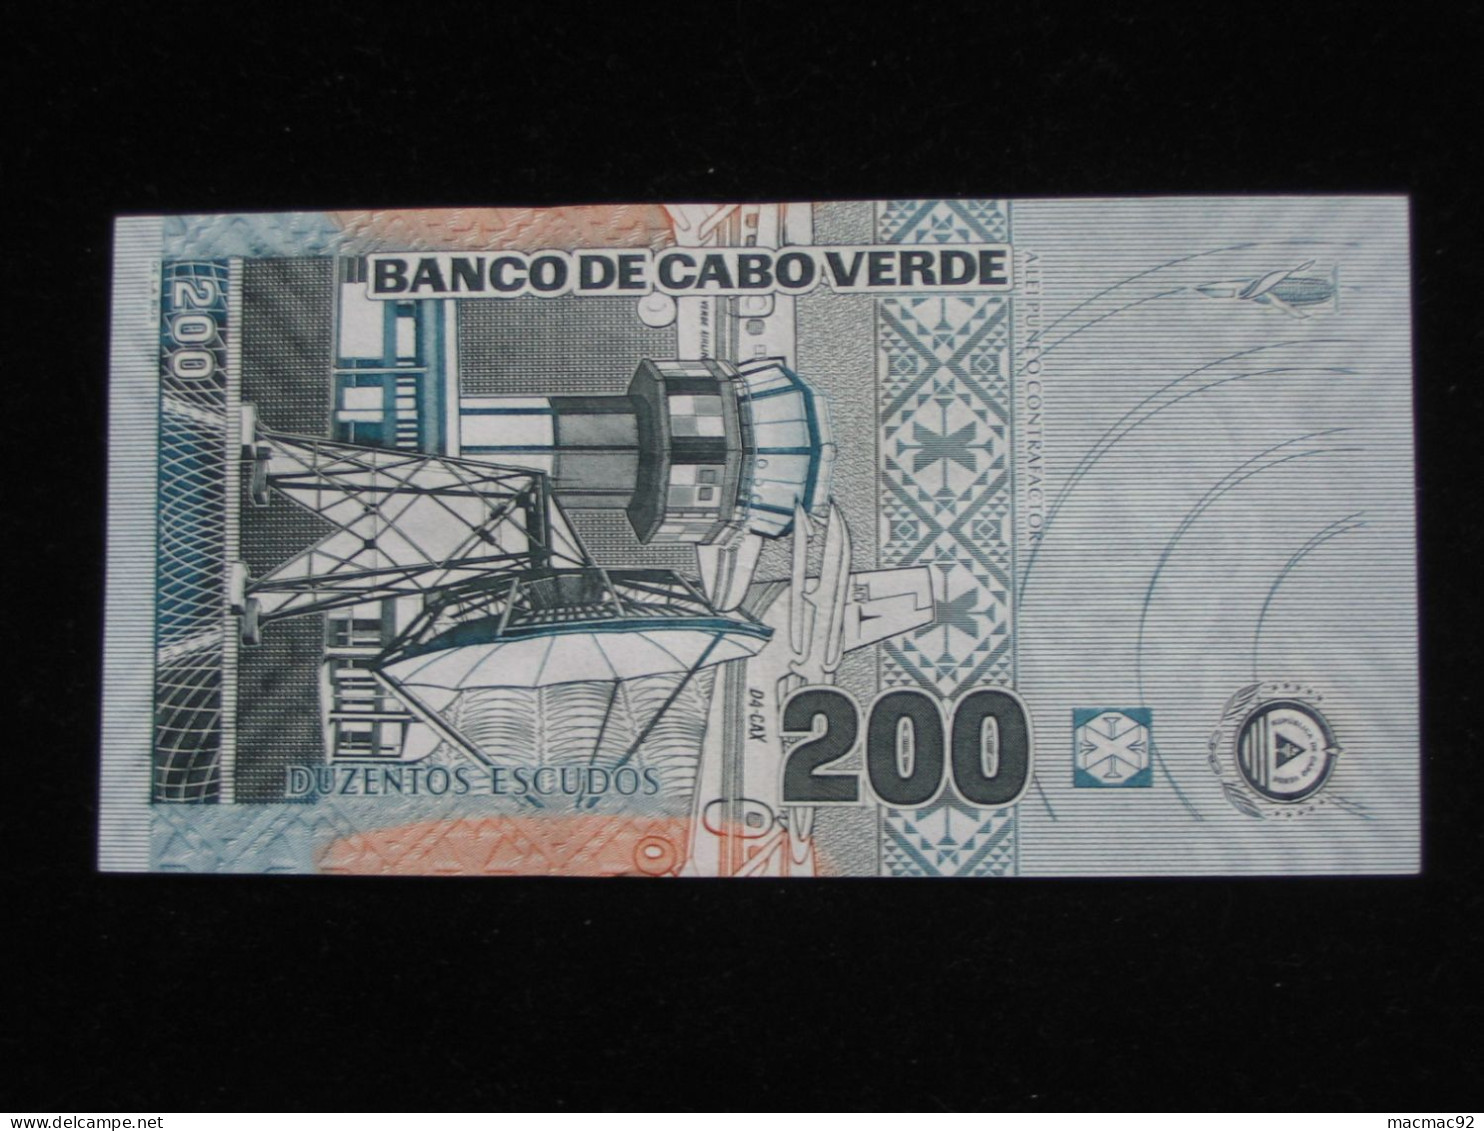 CAP VERT - 200 Duzentos Escudos 2005 - Banco De Cabo Verde **** EN ACHAT IMMEDIAT **** - Cape Verde